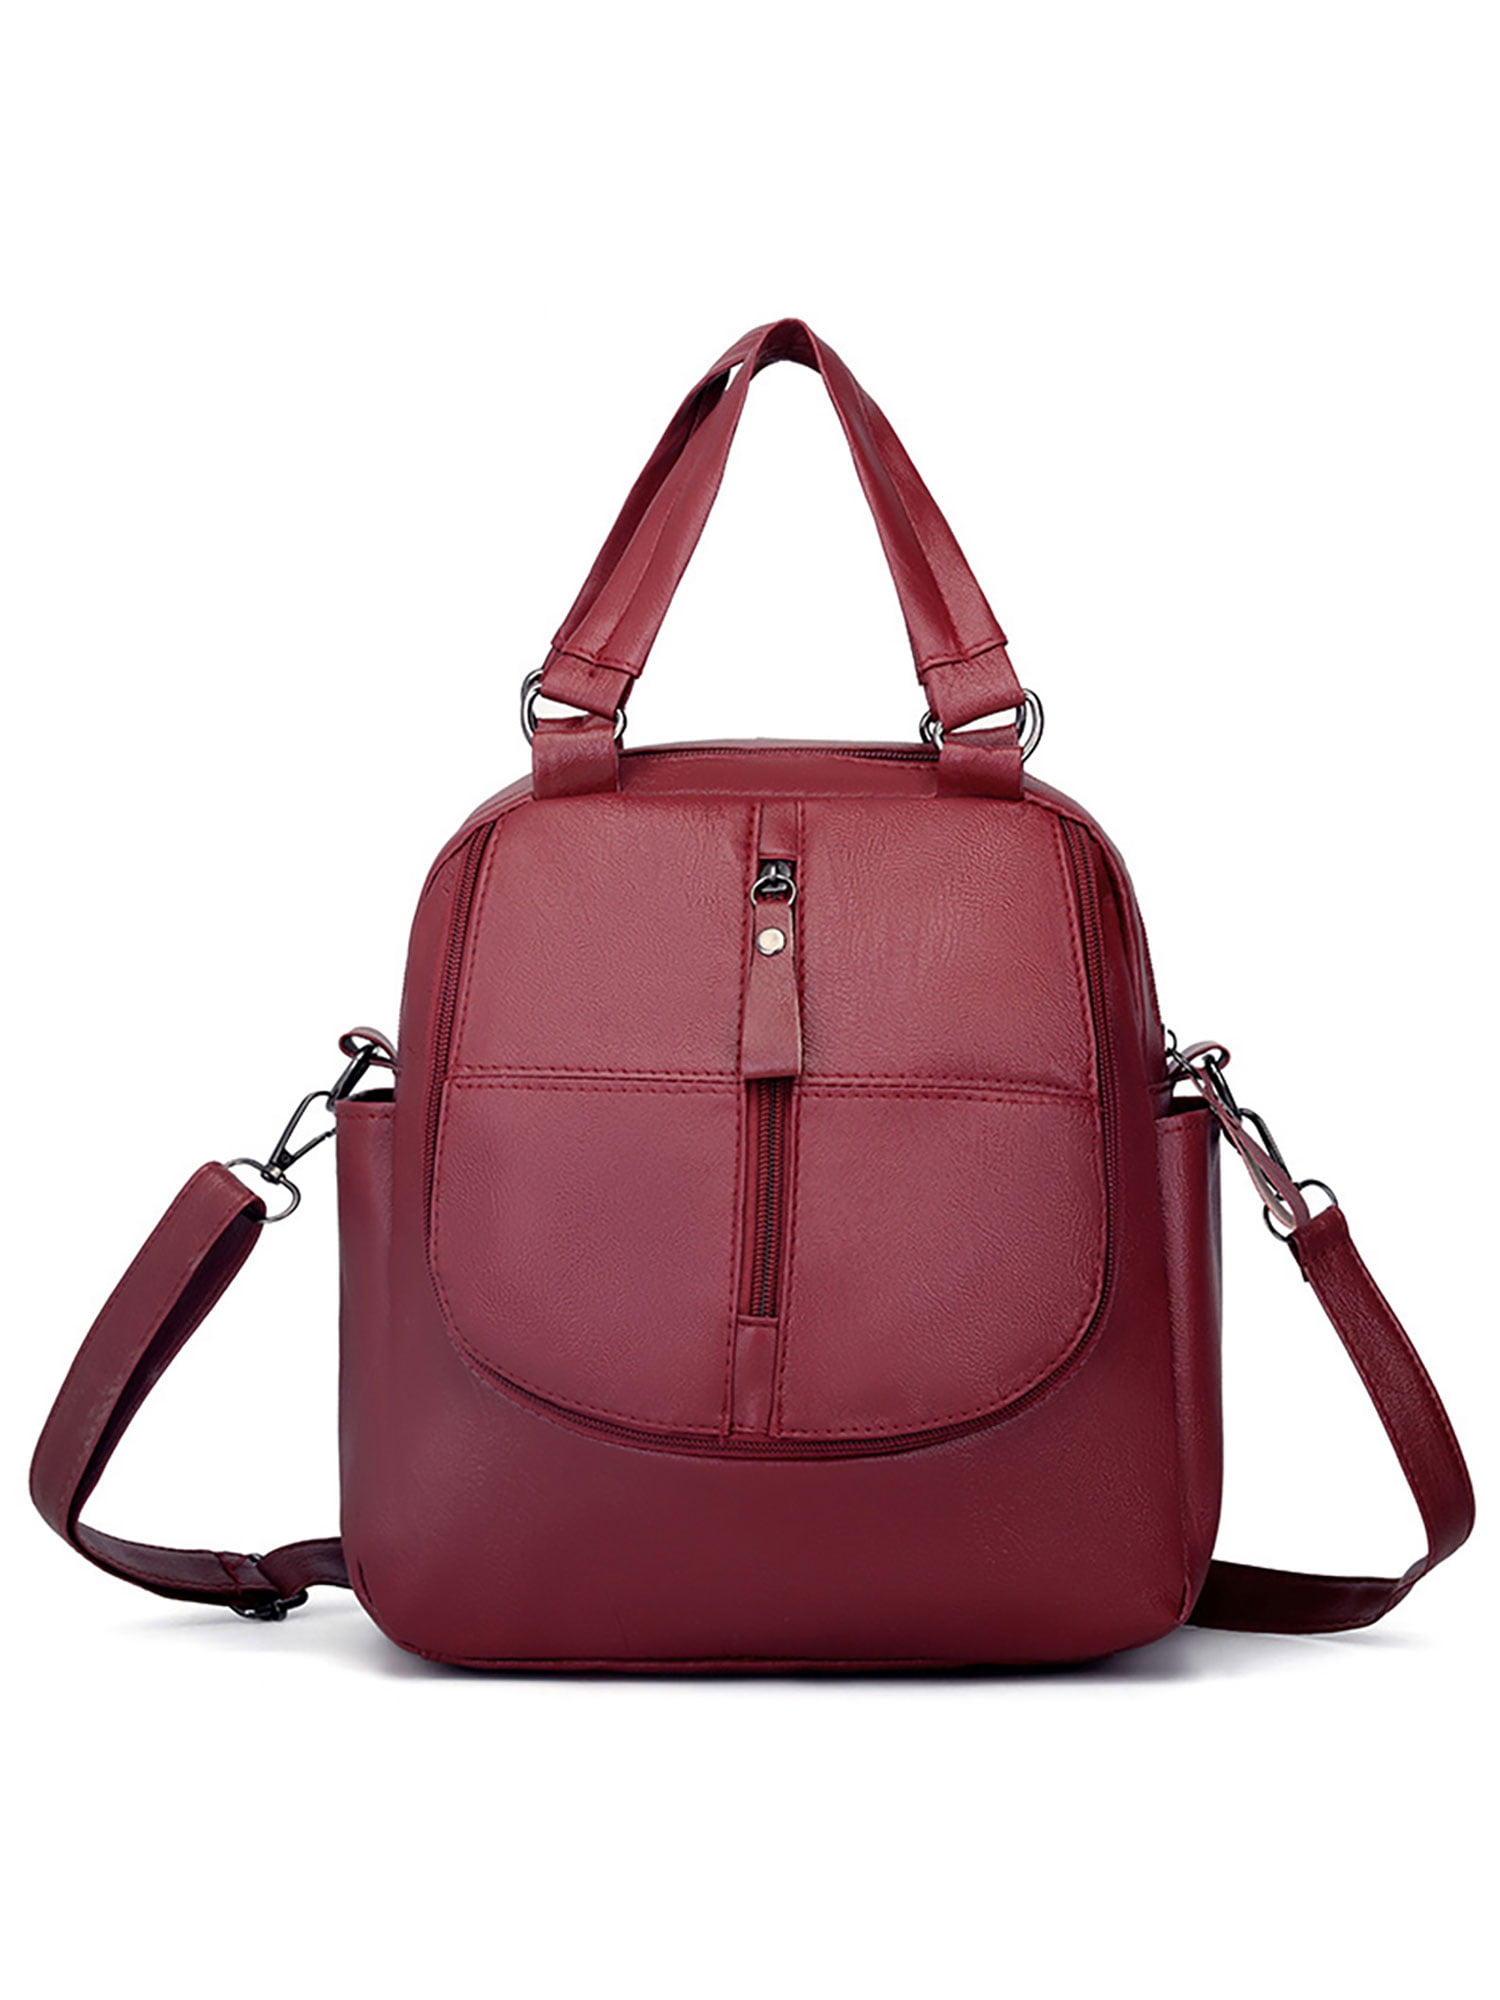 Women Handbag Lady Backpack Messenger Shoulder Bag School Bag Satchel Travel Bag 